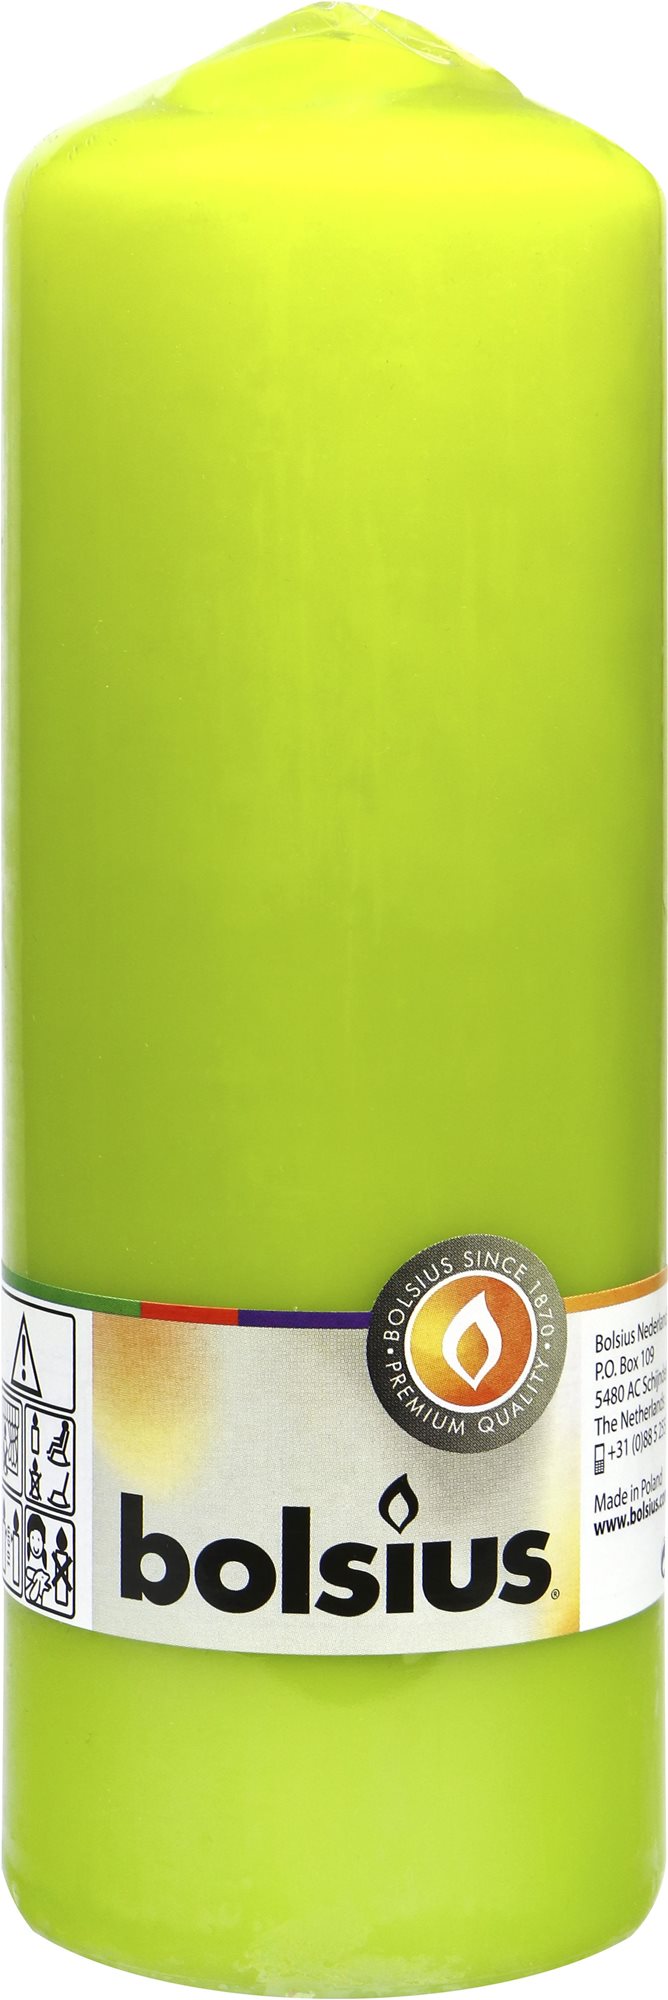 BOLSIUS klasszikus gyertya, világoszöld 200 × 68 mm